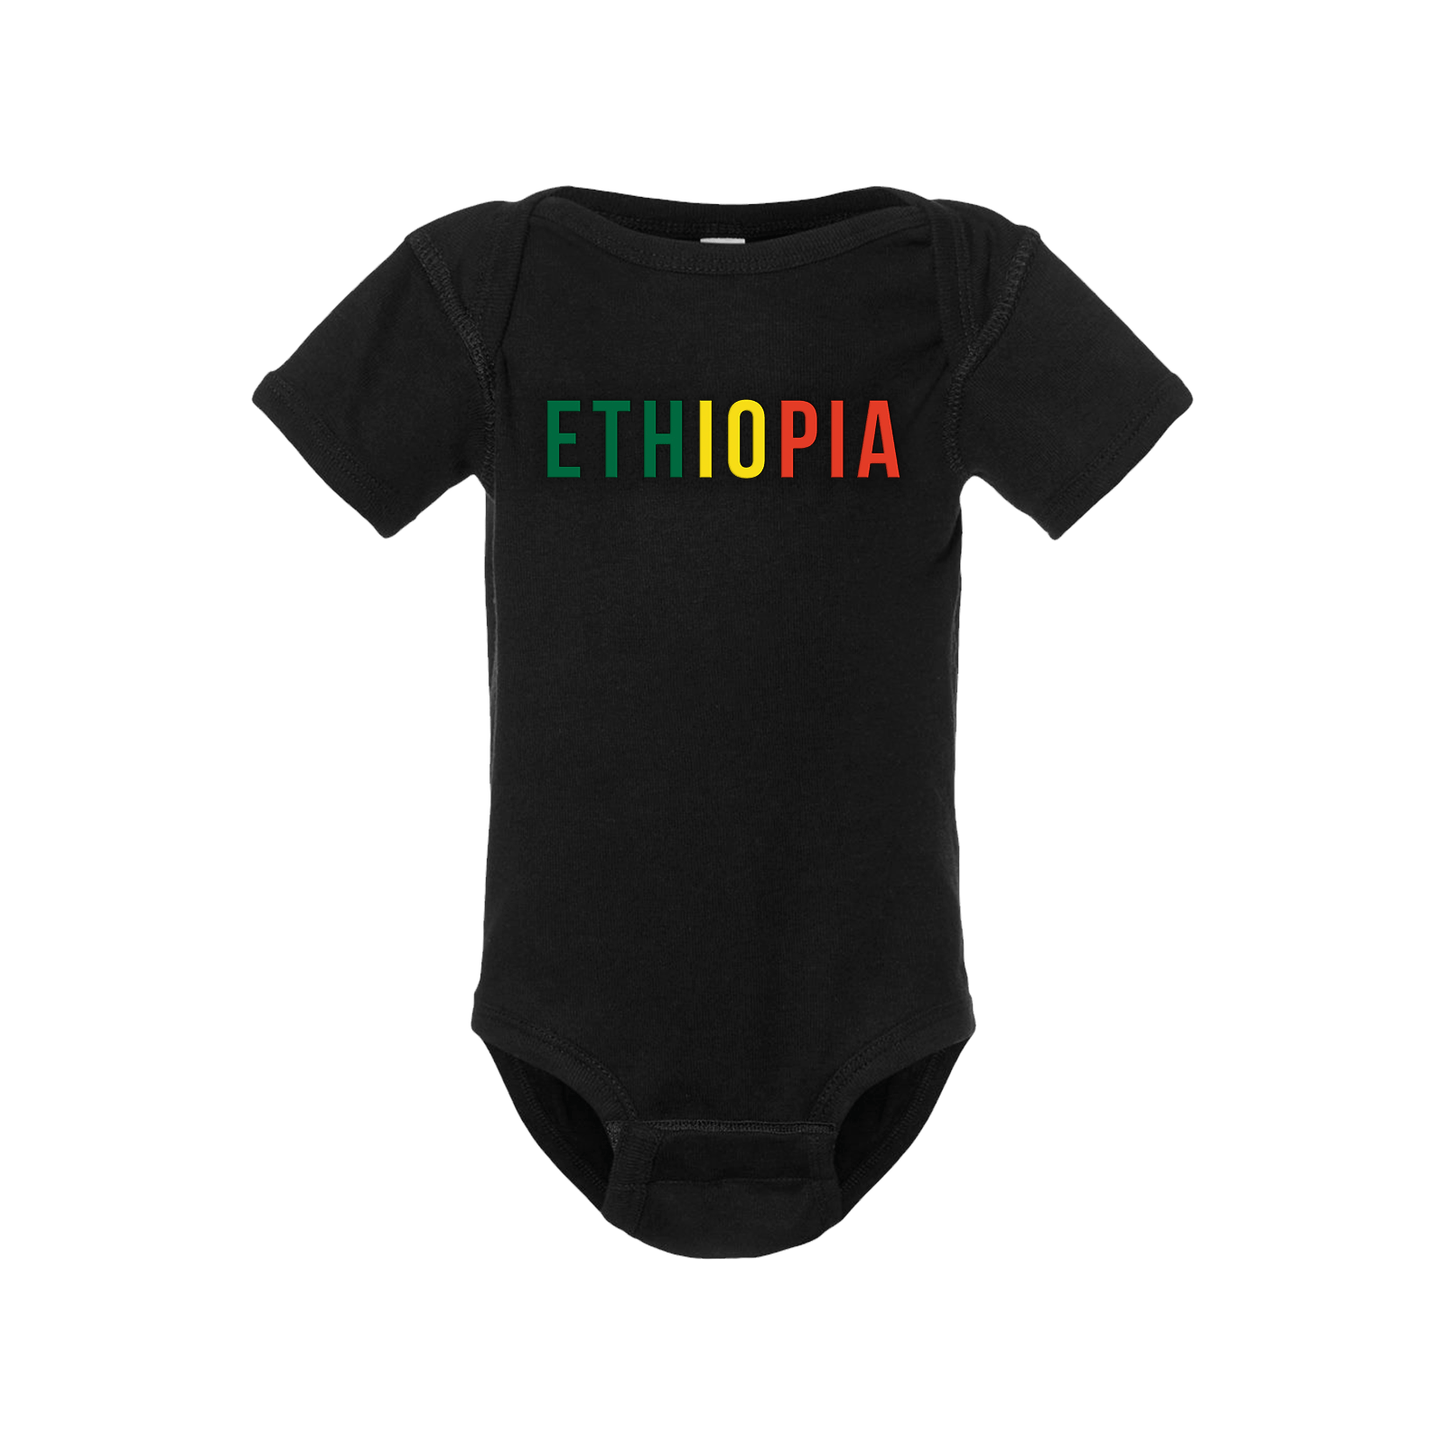 Ethiopia Short Sleeve Onesie - Babies & Toddlers